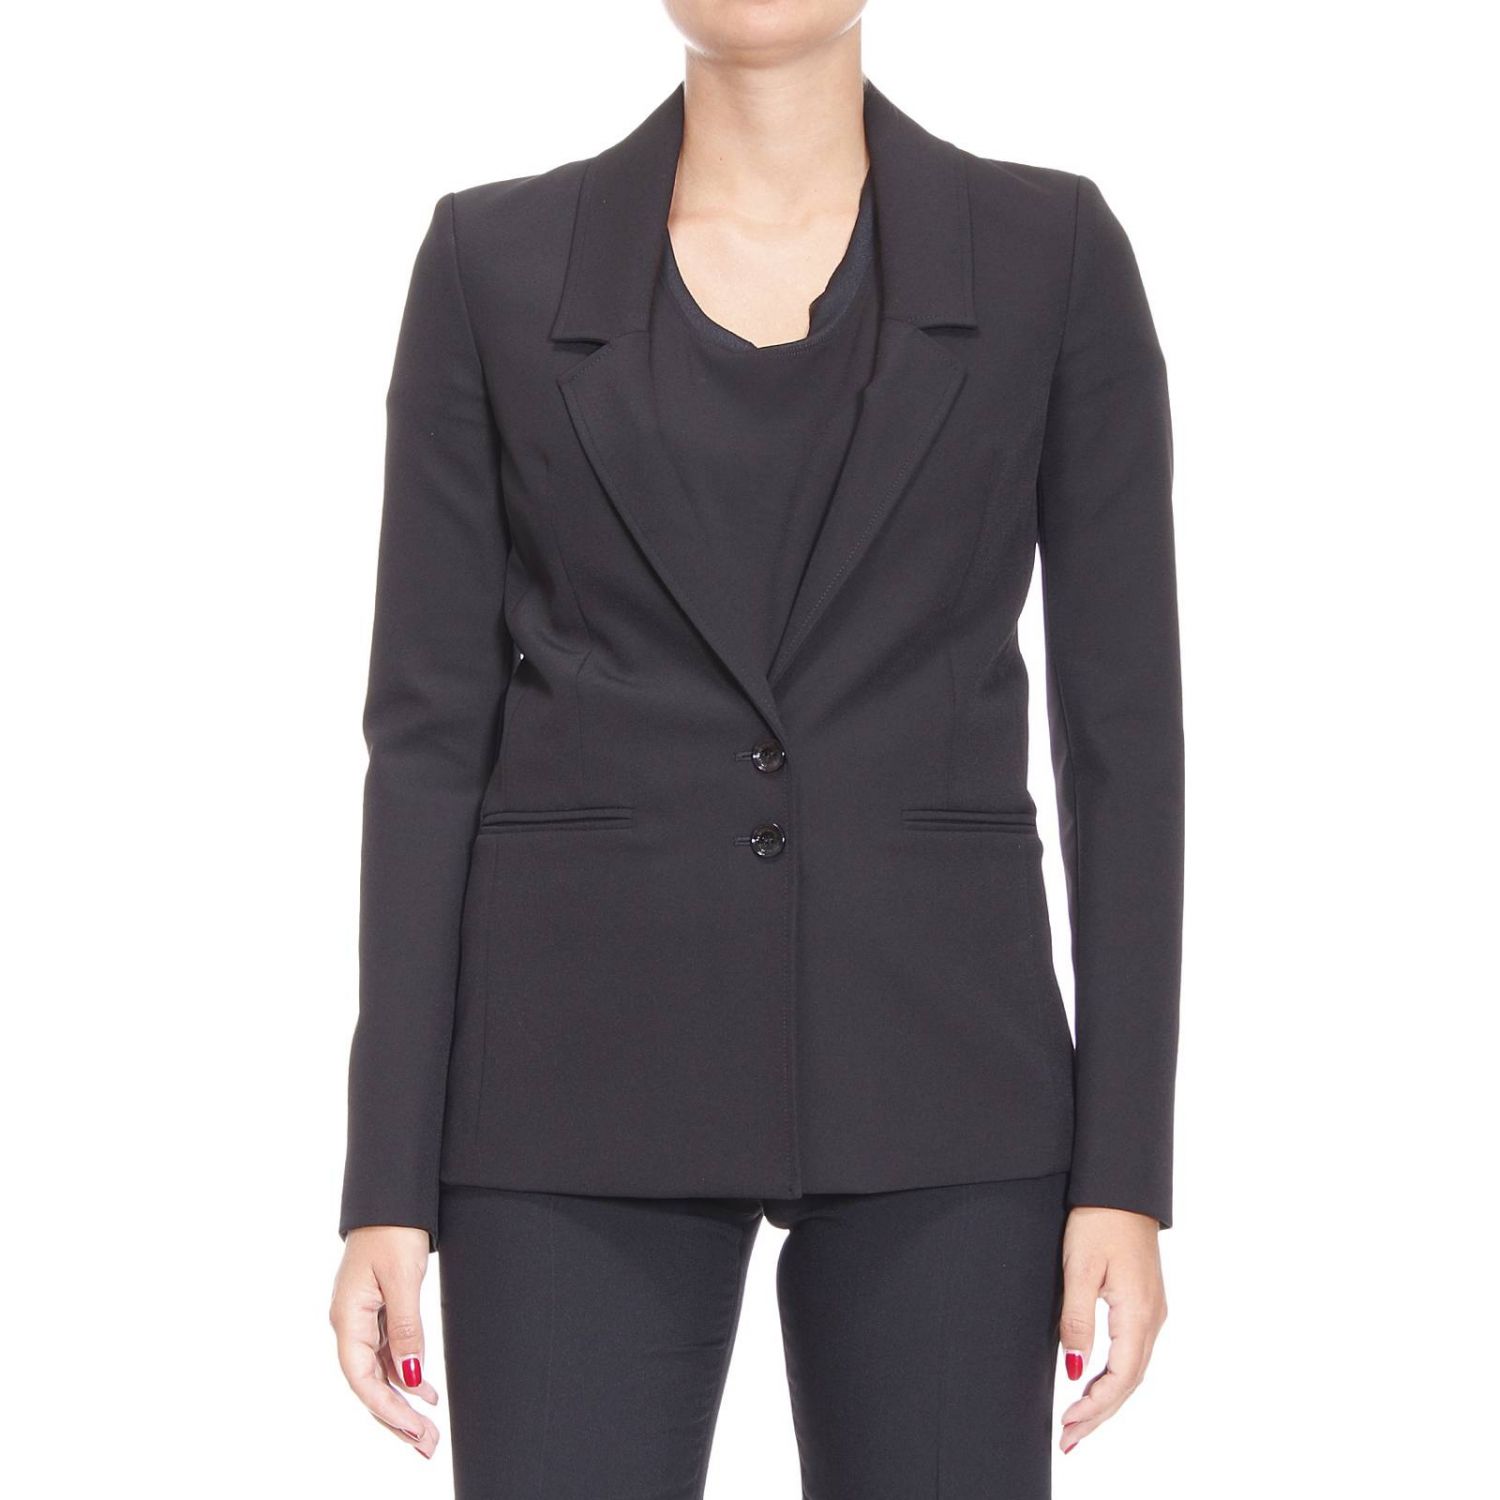 Patrizia Pepe Outlet: Suit jacket woman | Blazer Patrizia Pepe Women ...